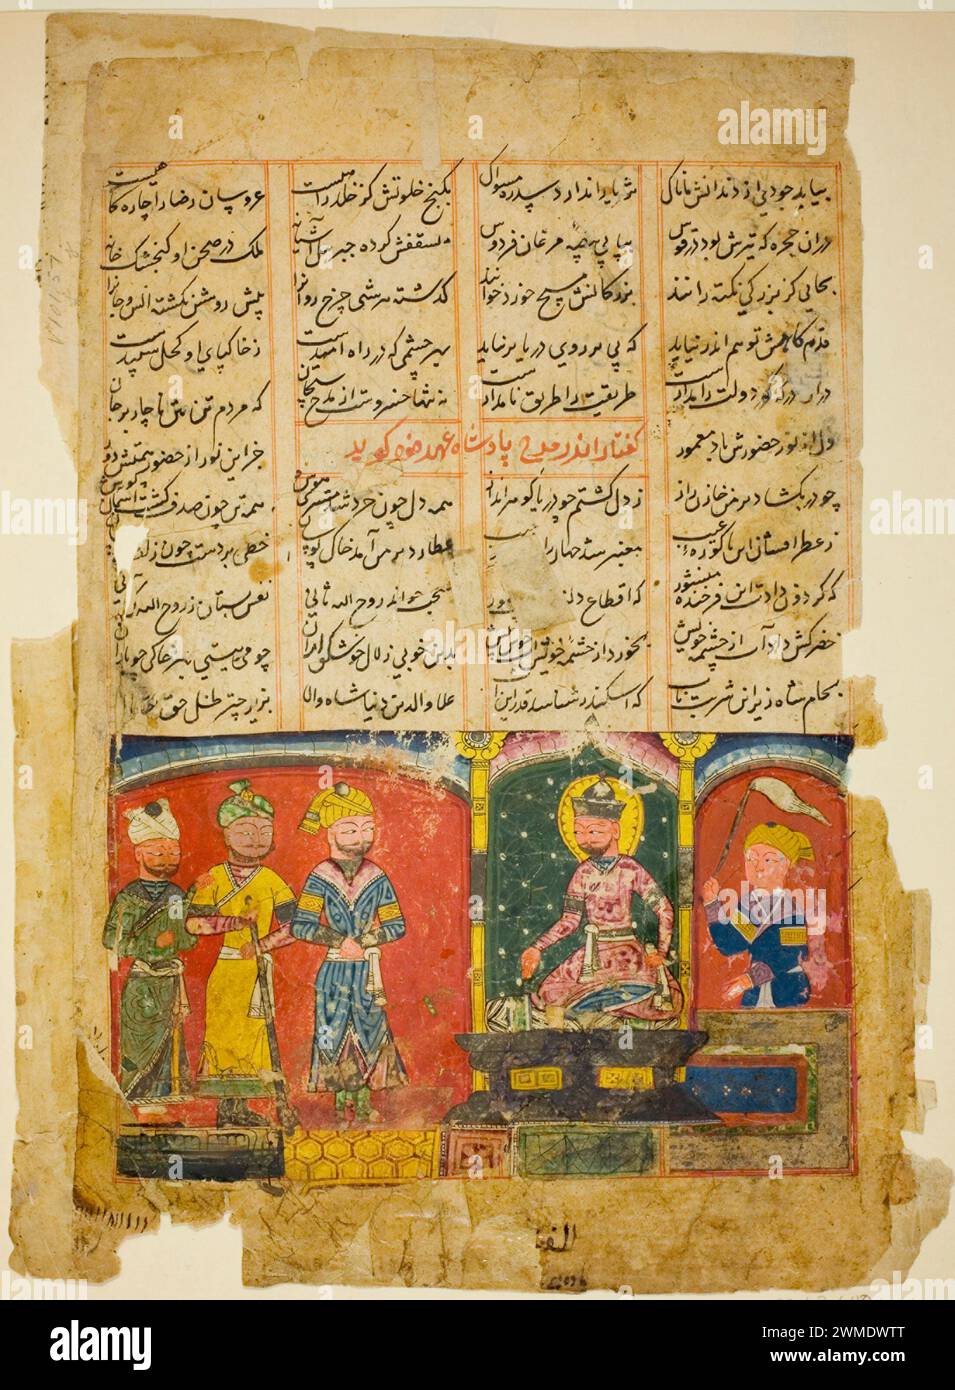 Indien, Amir Khusrau widmet sein Gedicht Sultan Ala al-DIN Khalji, Mitte des 15. Jahrhunderts; eine lebendige Darstellung einer Hofszene mit einer sitzenden königlichen Figur und ihren Anhängern, die das reiche kulturelle und poetische Erbe der Sultanatsperiode von Delhi widerspiegelt Stockfoto